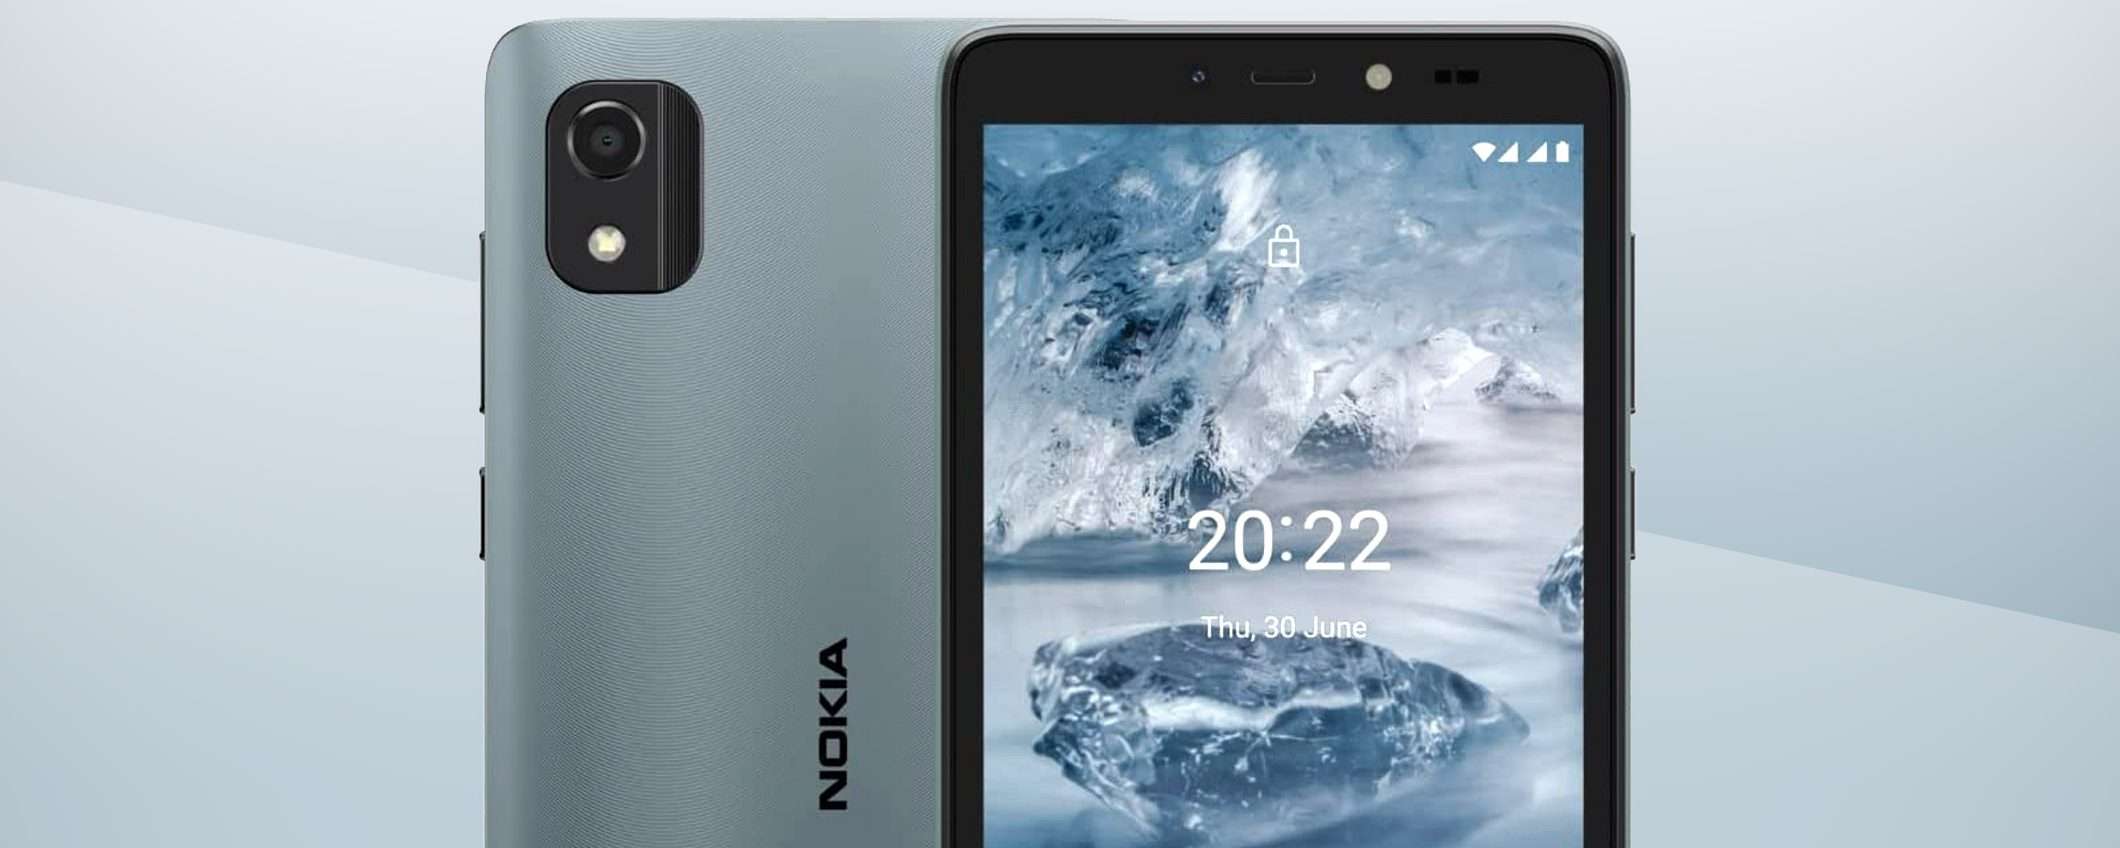 Questo smartphone Nokia scende a 79€ nel Prime Day